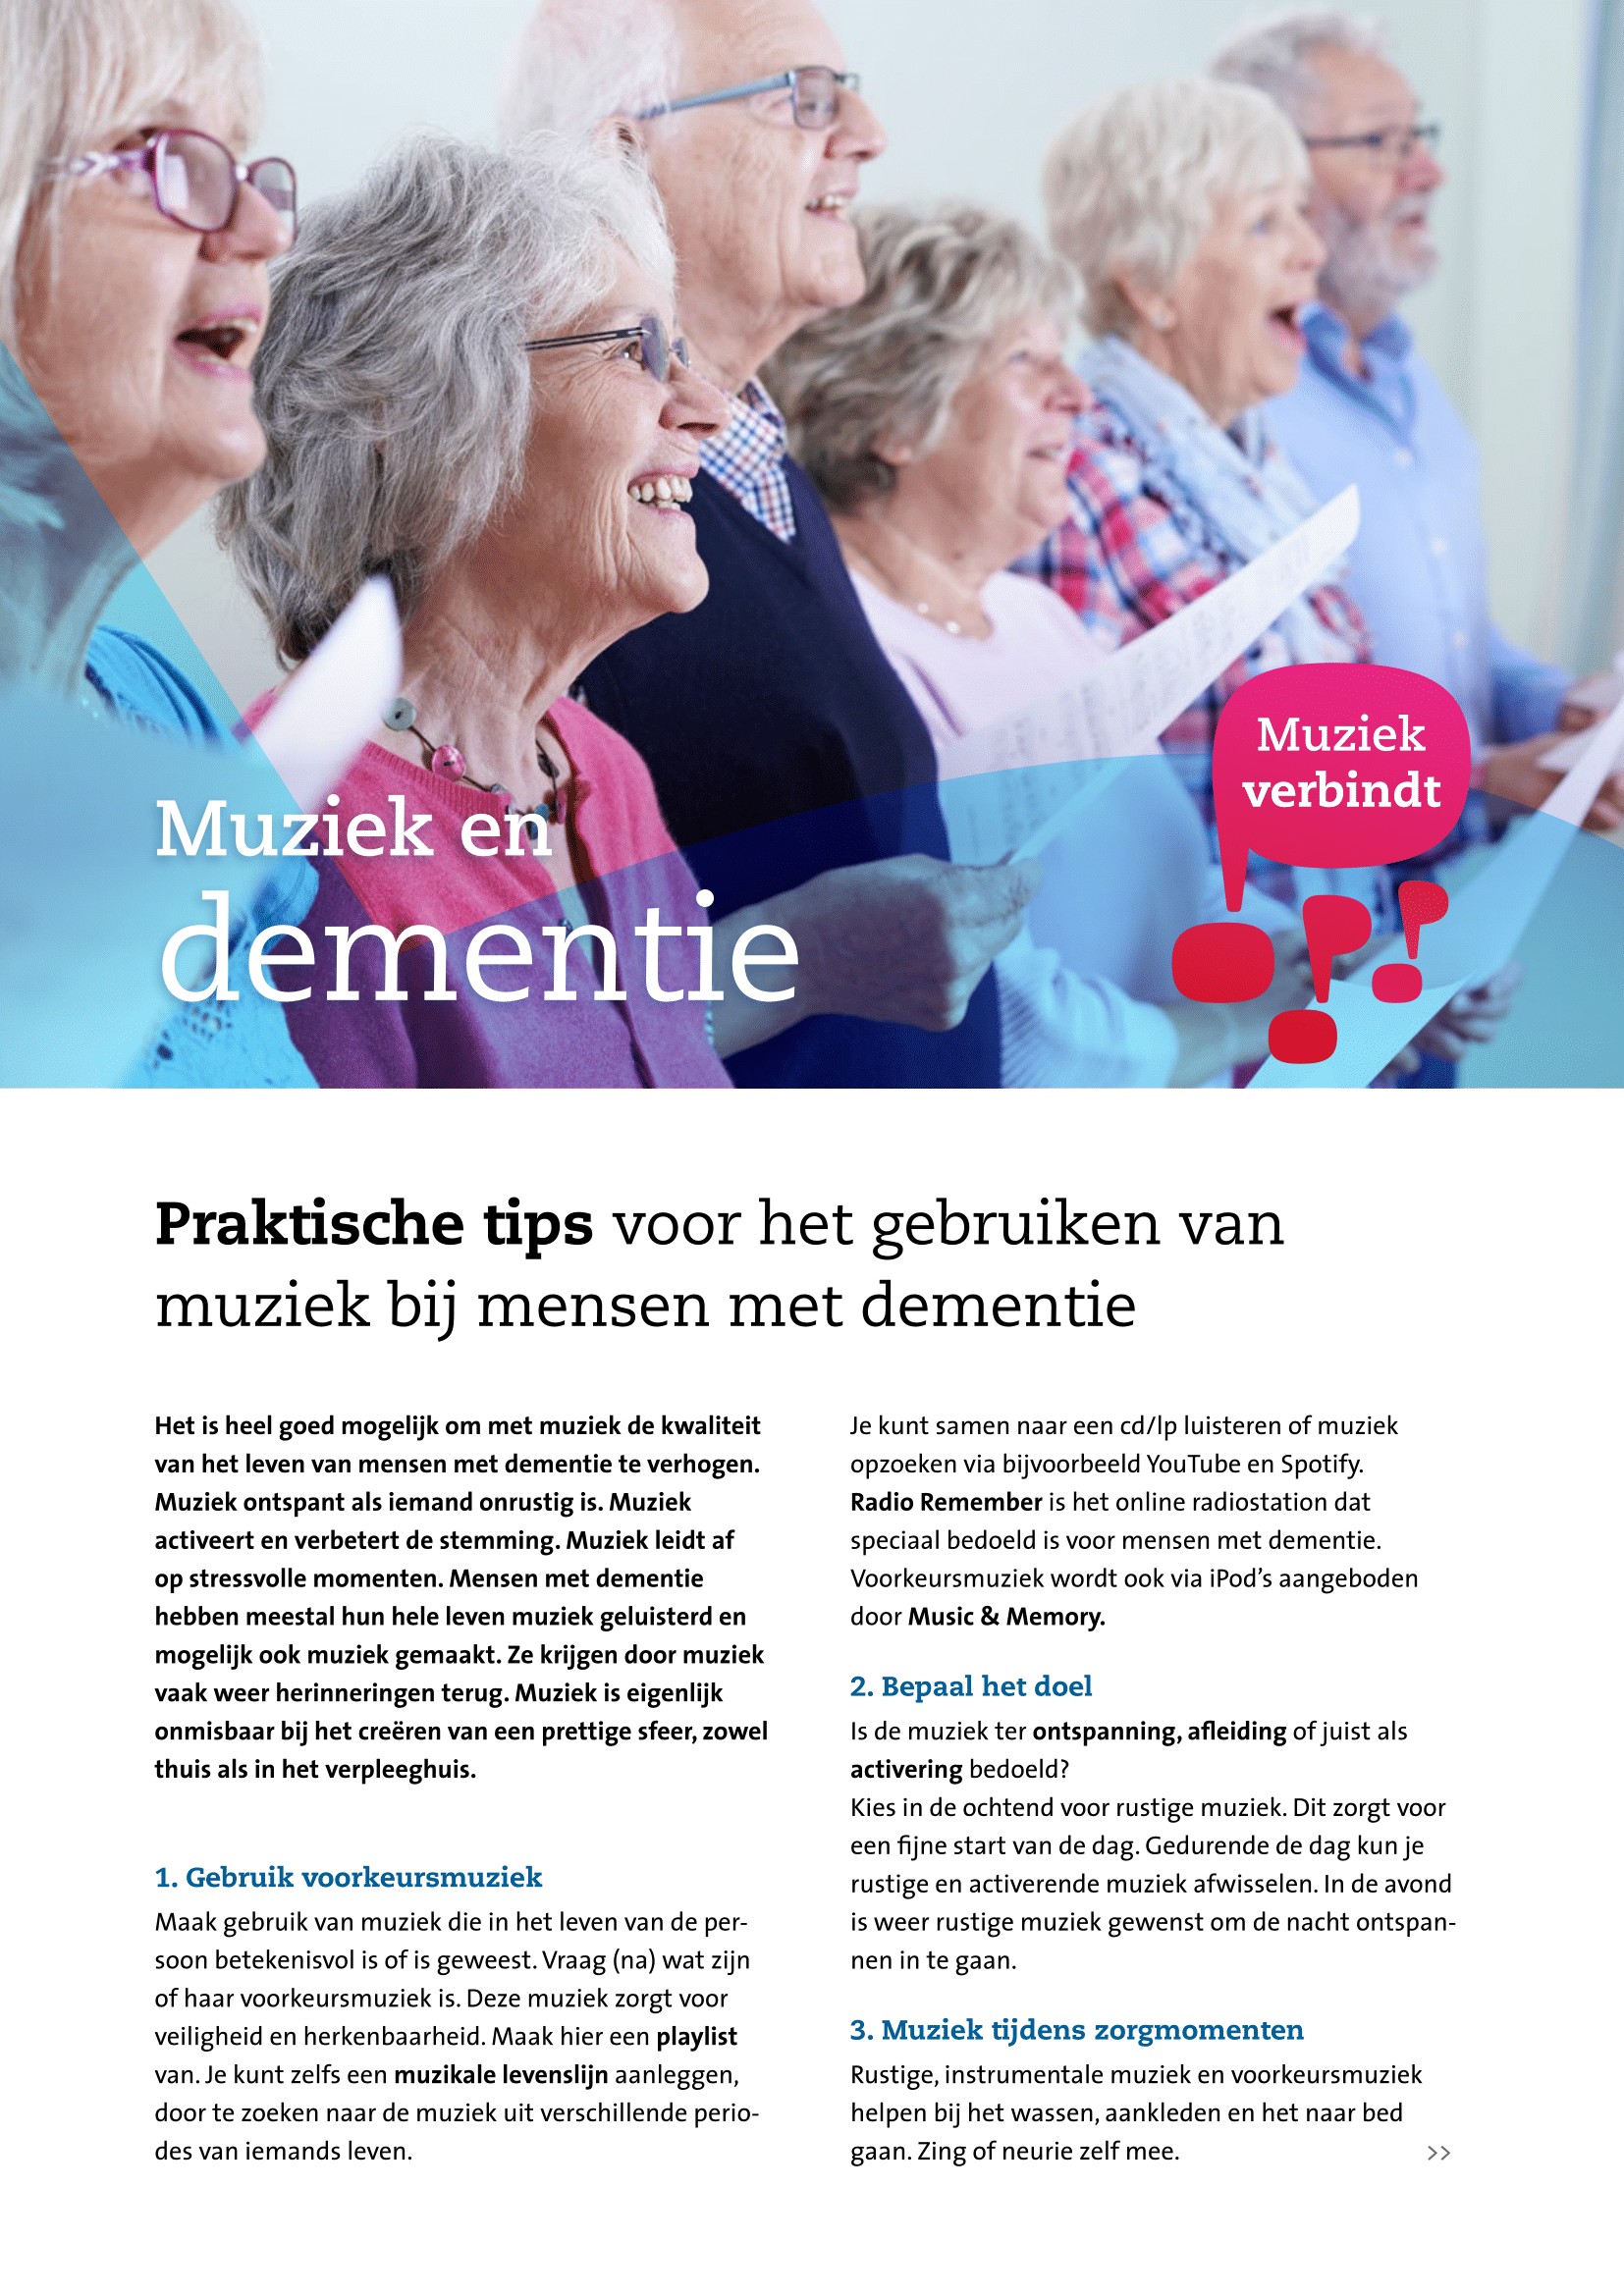 Muziek en Dementie: Praktische tips voor het gebruiken van muziek bij mensen met dementie